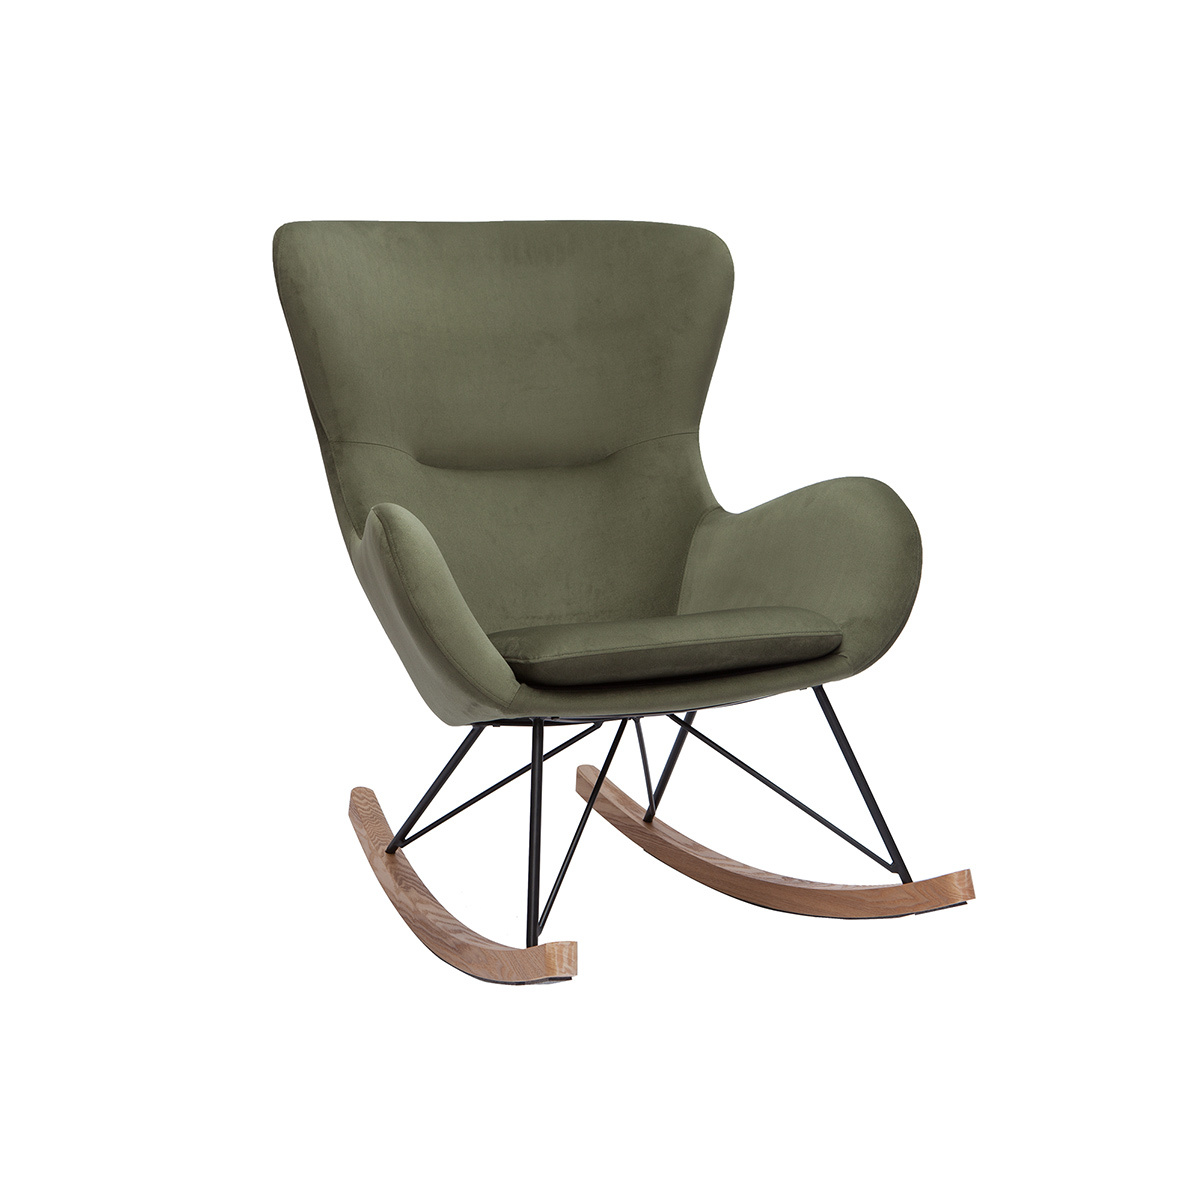 Rocking chair design en tissu effet velours kaki, métal noir et bois clair ESKUA vue1